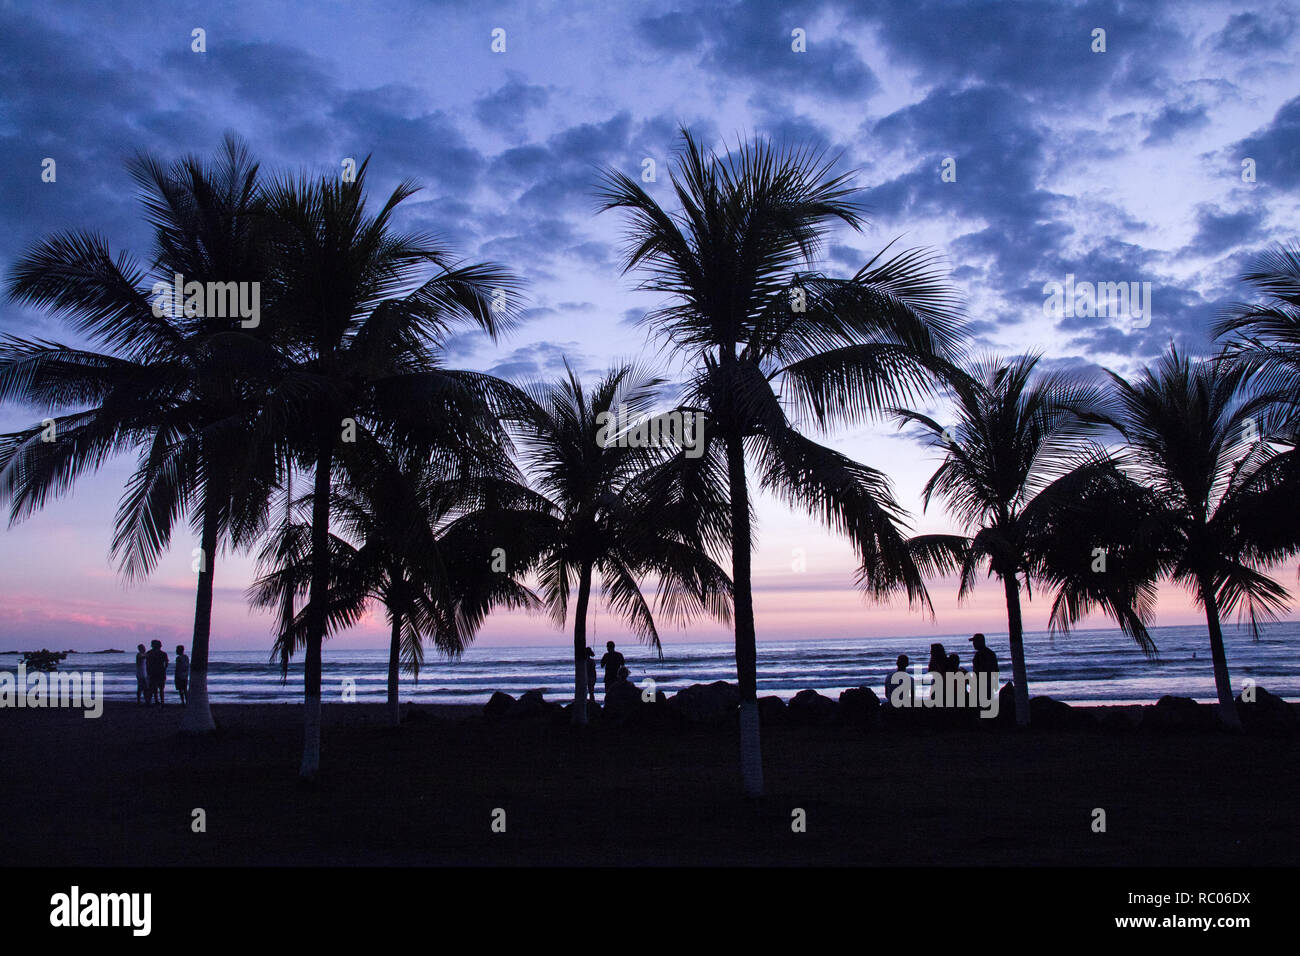 Ein Foto einer erstaunlichen Sonnenuntergang in Jaco Beach, Costa Rica. Silhouetten der schönen hohen Palmen im Vordergrund. Menschen sind nicht erkennbar. Stockfoto